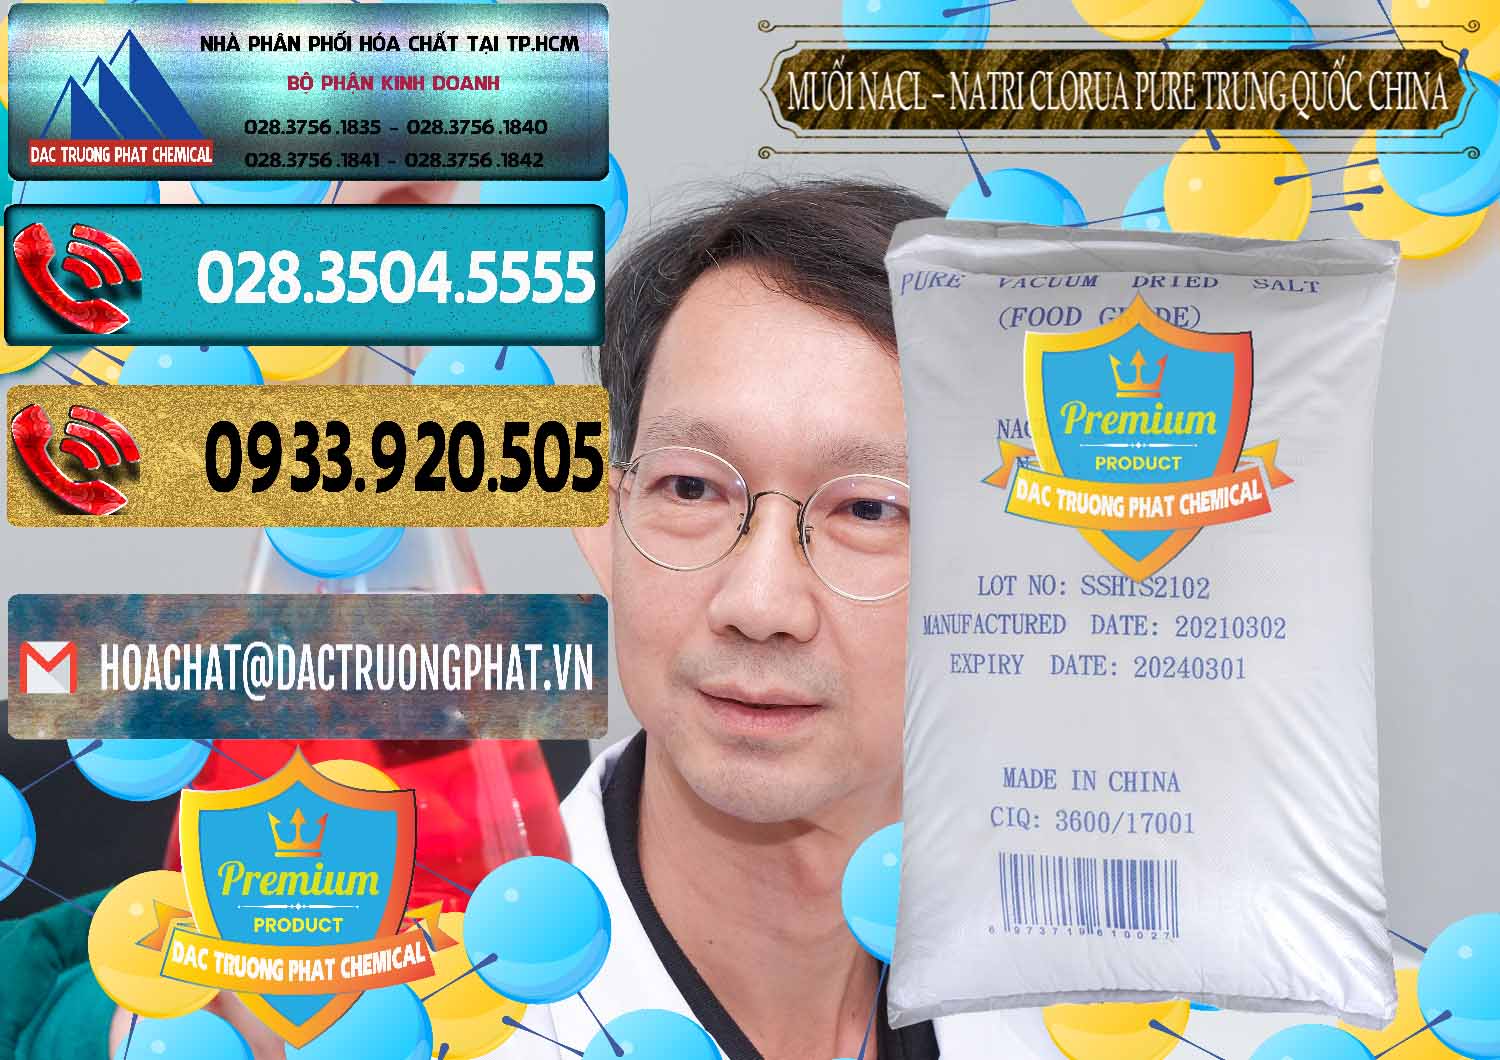 Đơn vị chuyên bán và cung ứng Muối NaCL – Sodium Chloride Pure Trung Quốc China - 0230 - Phân phối & cung cấp hóa chất tại TP.HCM - hoachatdetnhuom.com